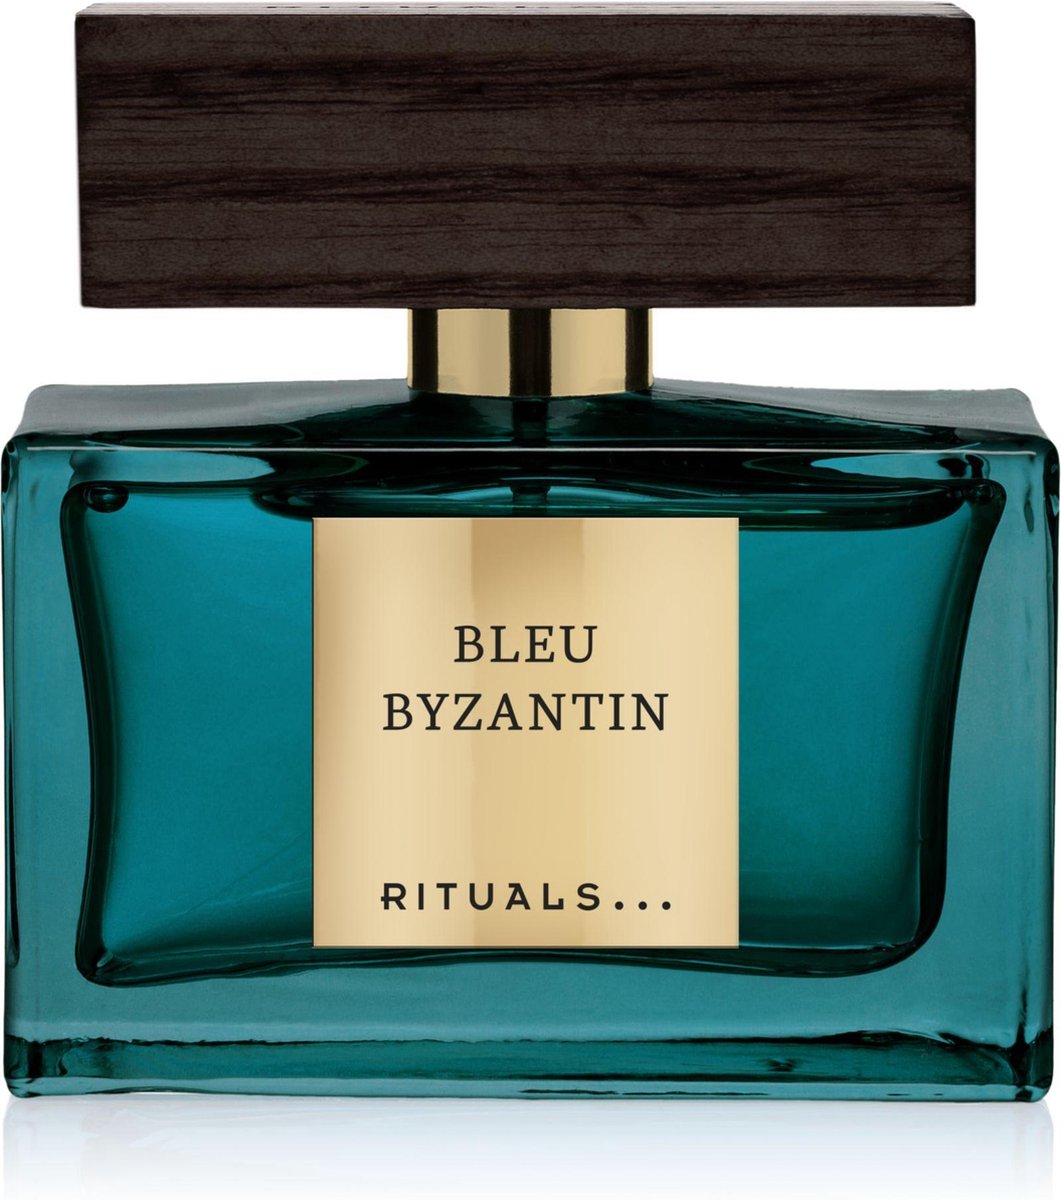 RITUALS Bleu Byzantin 50 ml - Eau de parfum - Herenparfum